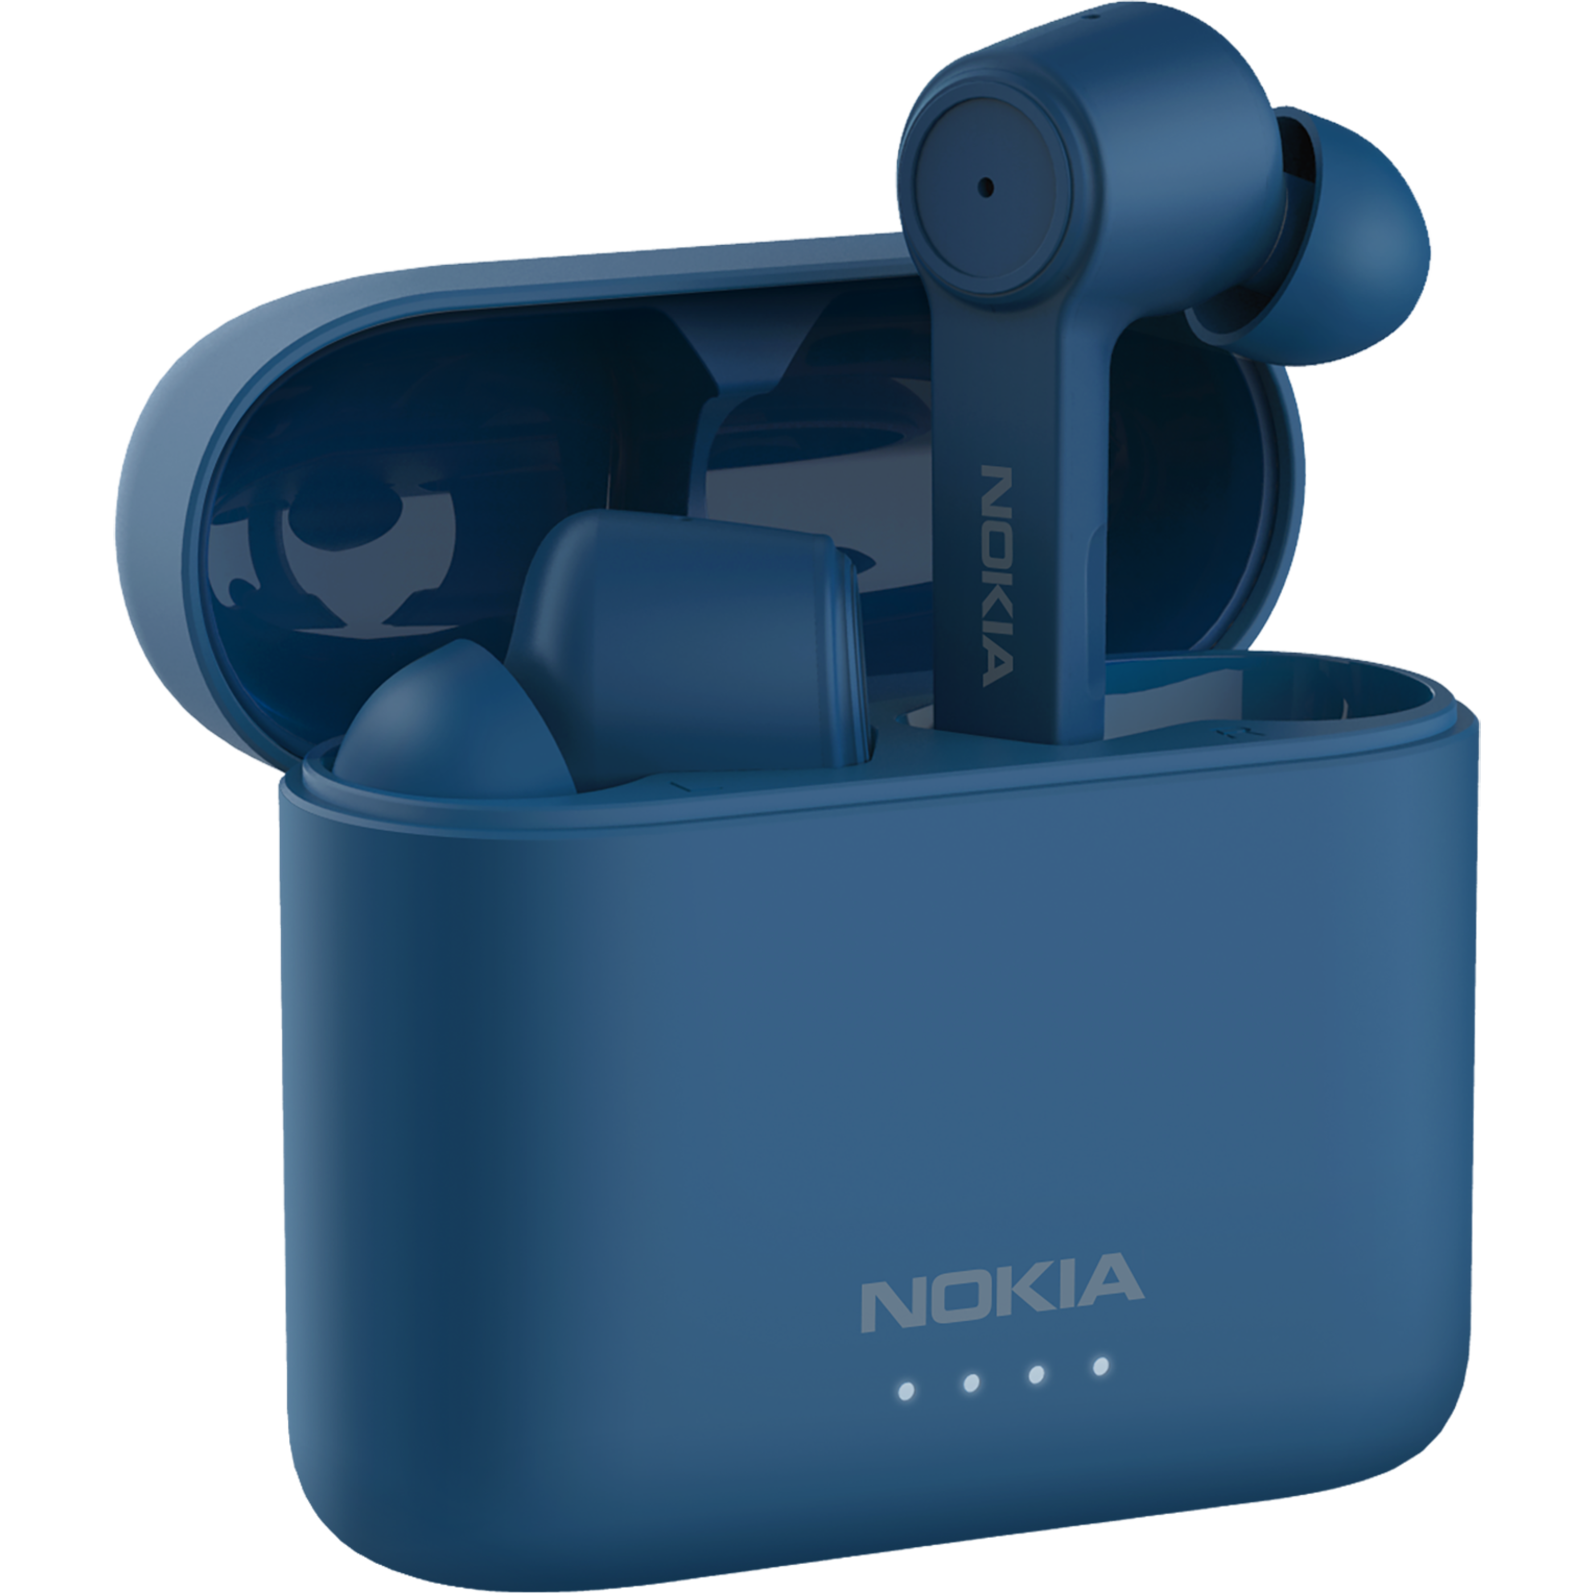 Nokia phone audio accessories